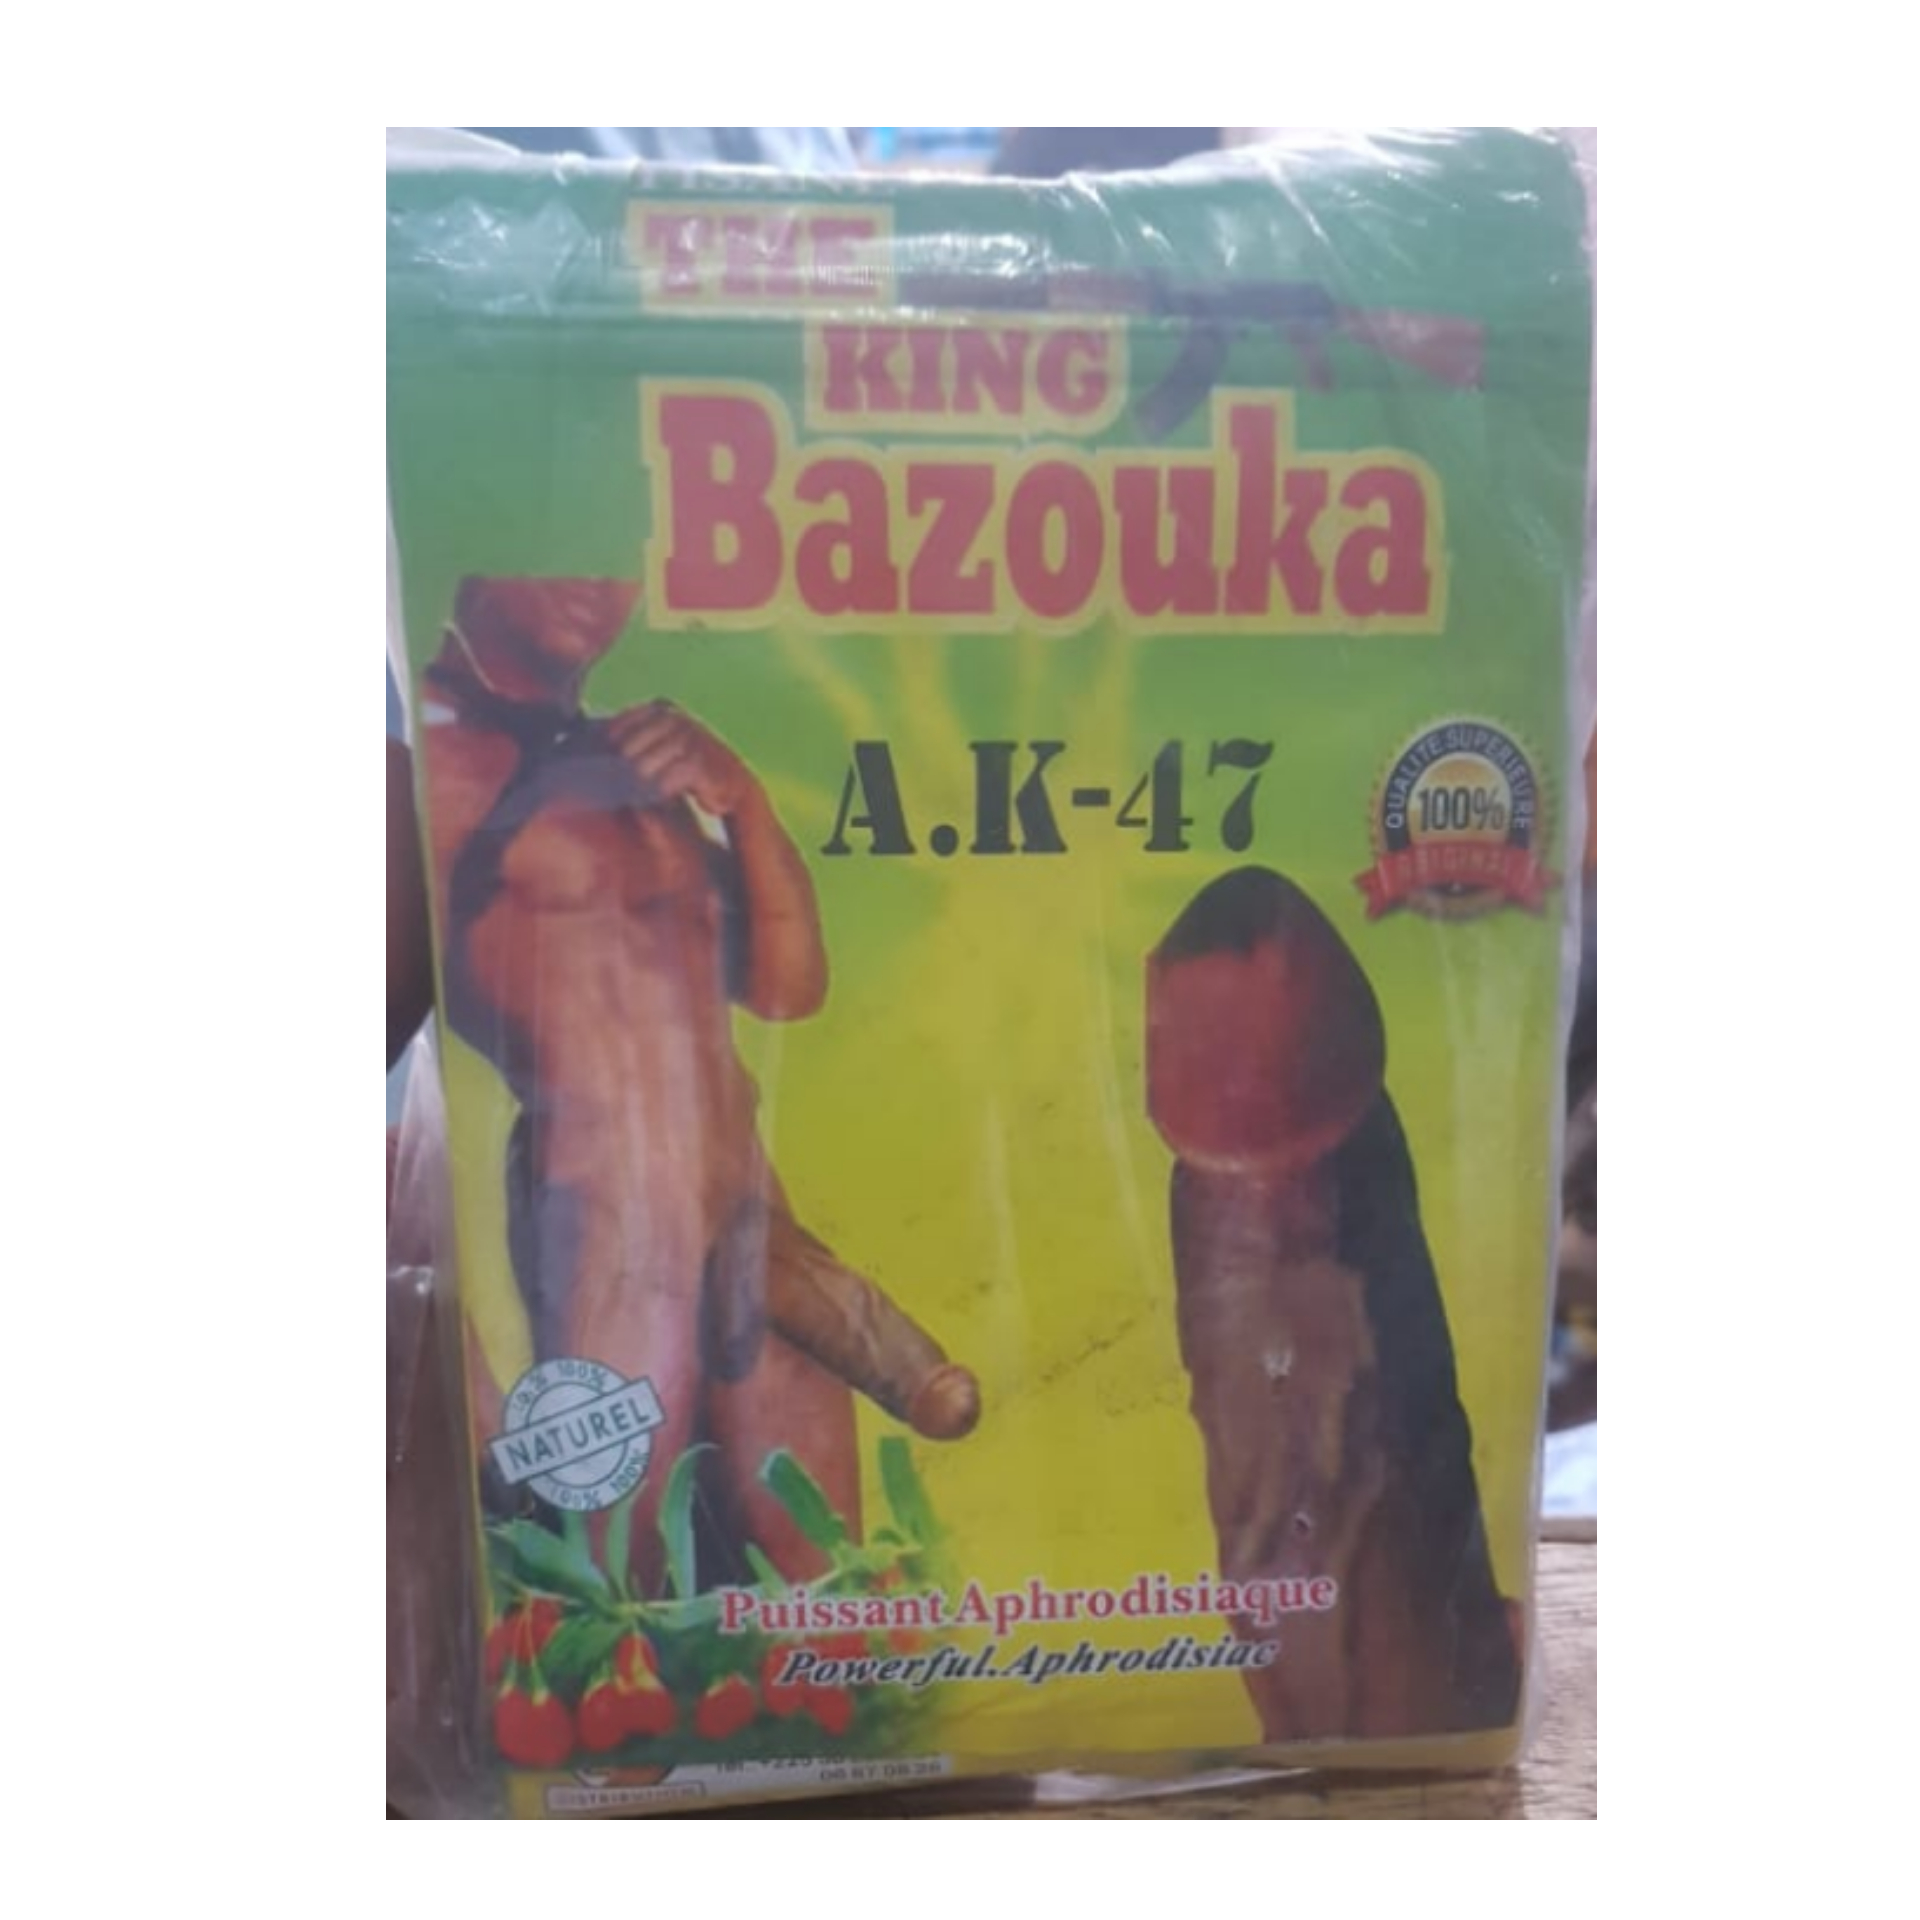 The King Bazouka AK47 Herbal Powder for Penis Enlargement